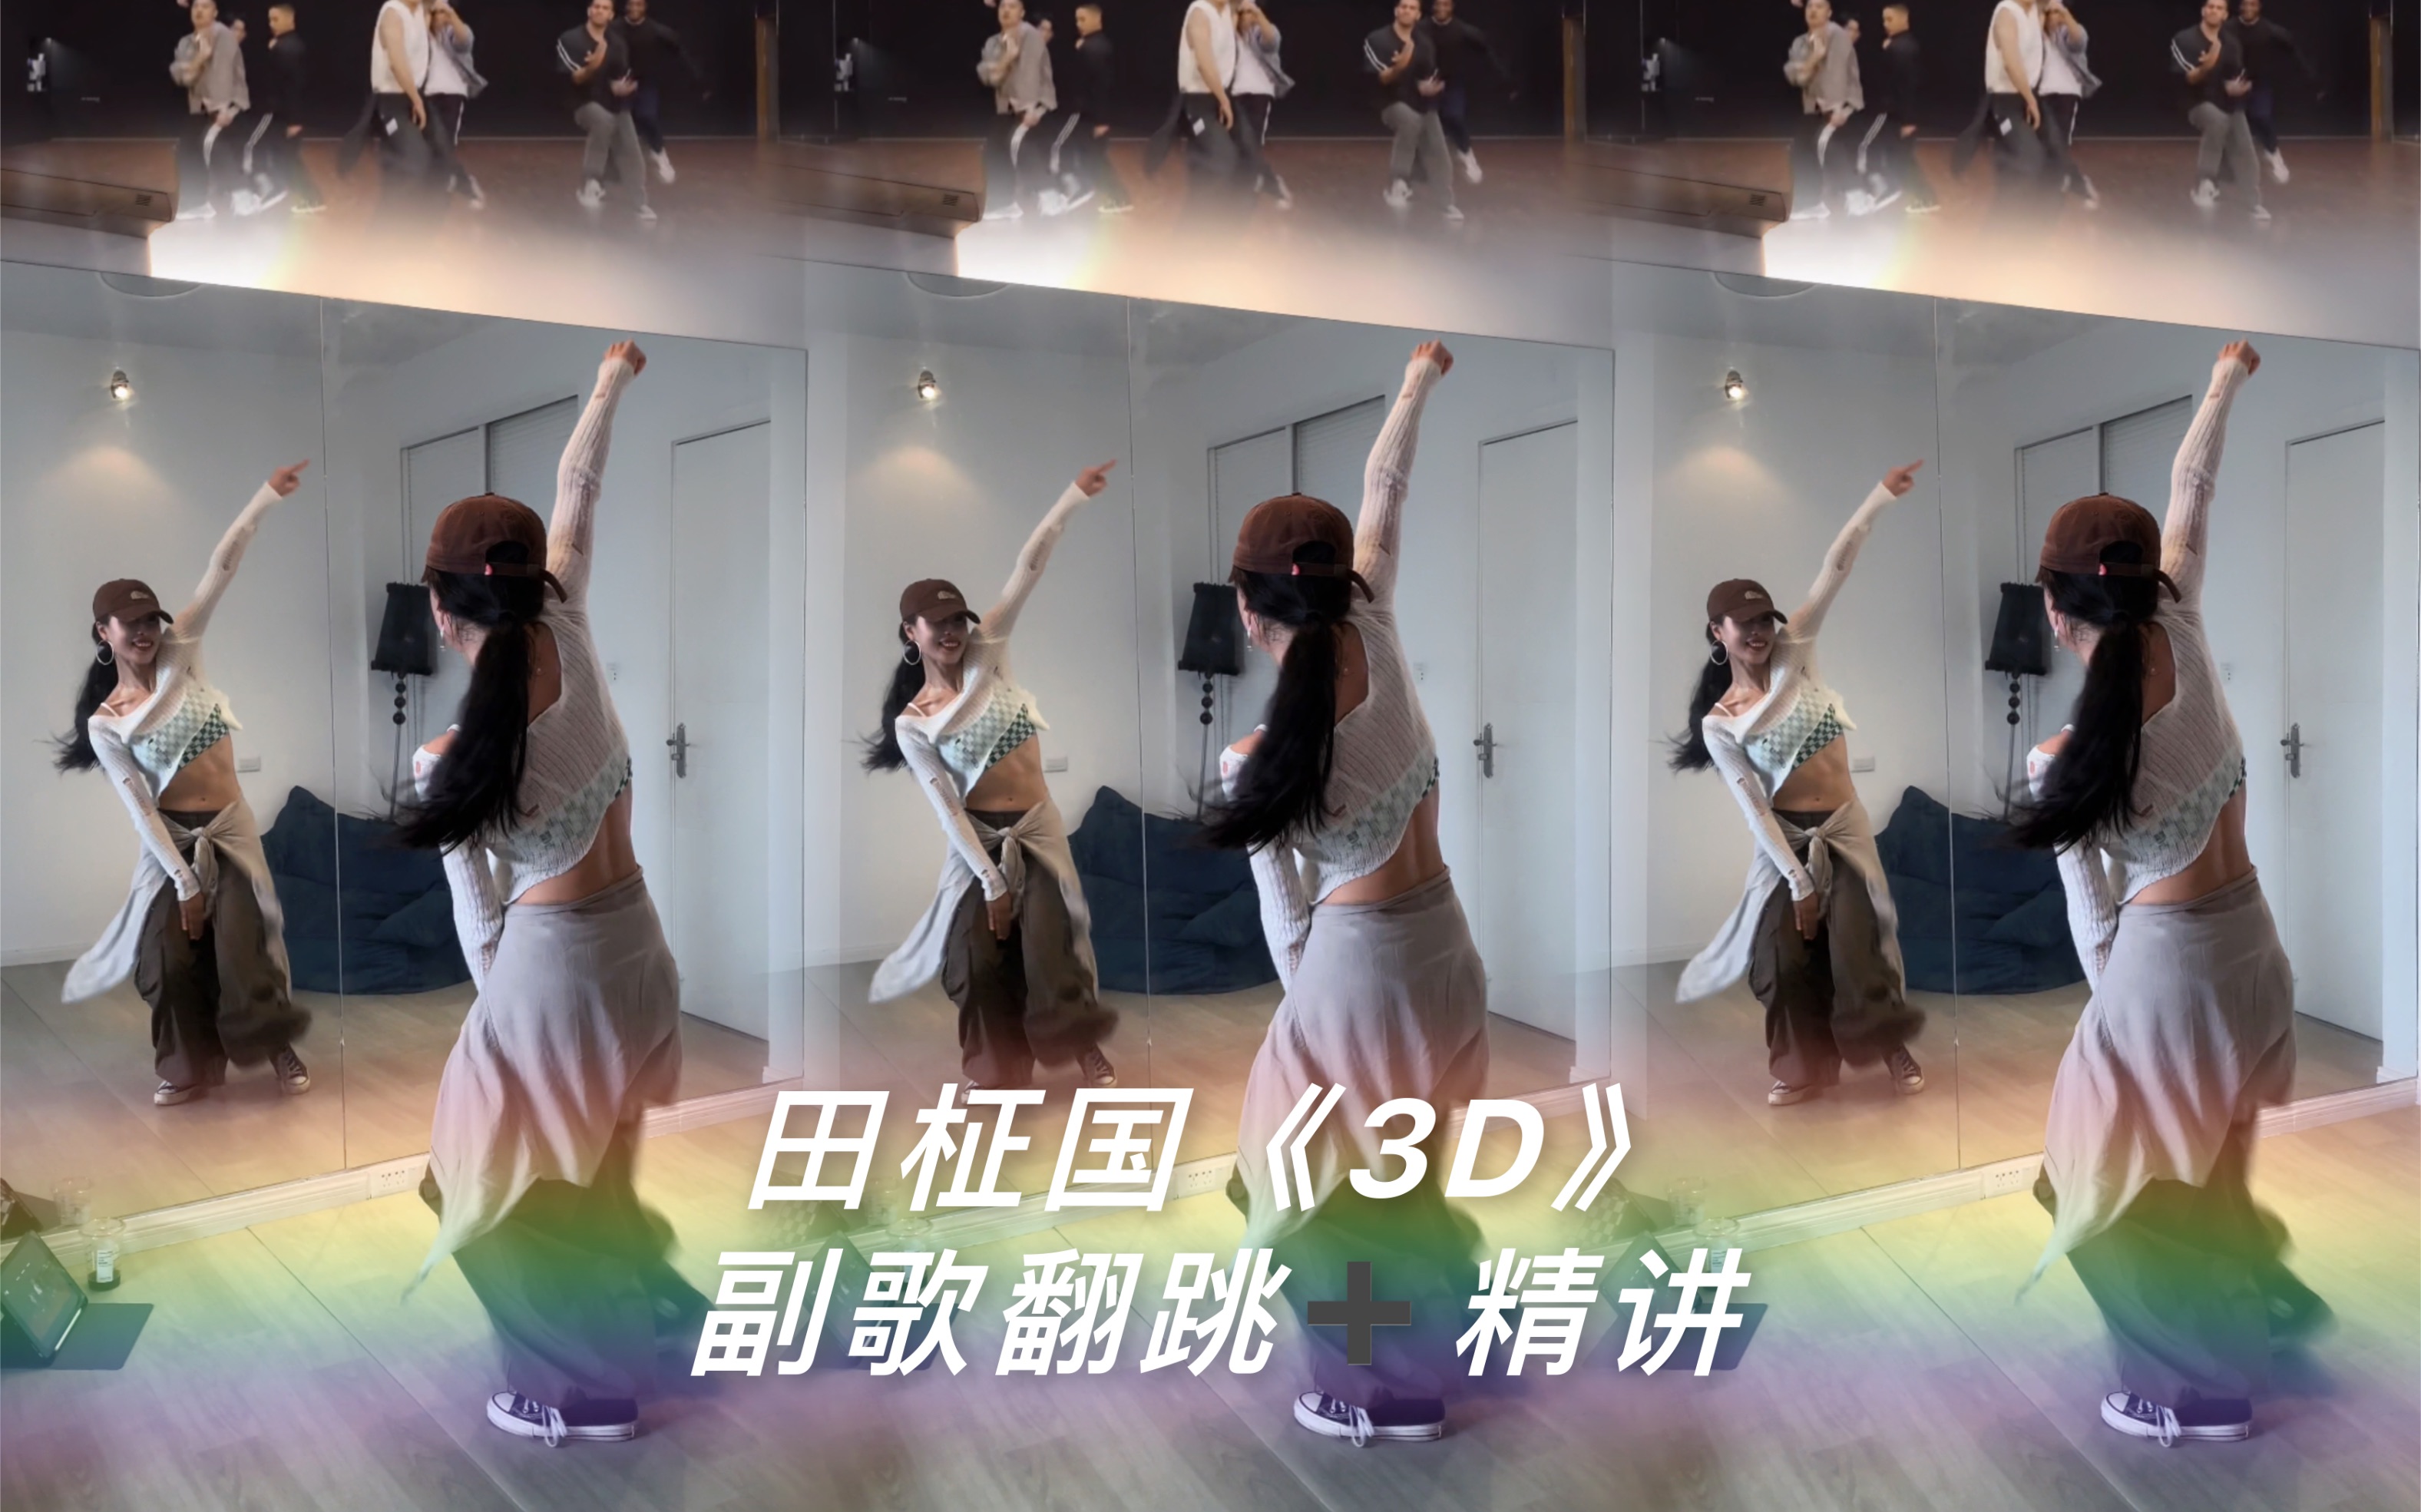 【叶子教程】田柾国《3D》舞蹈教学